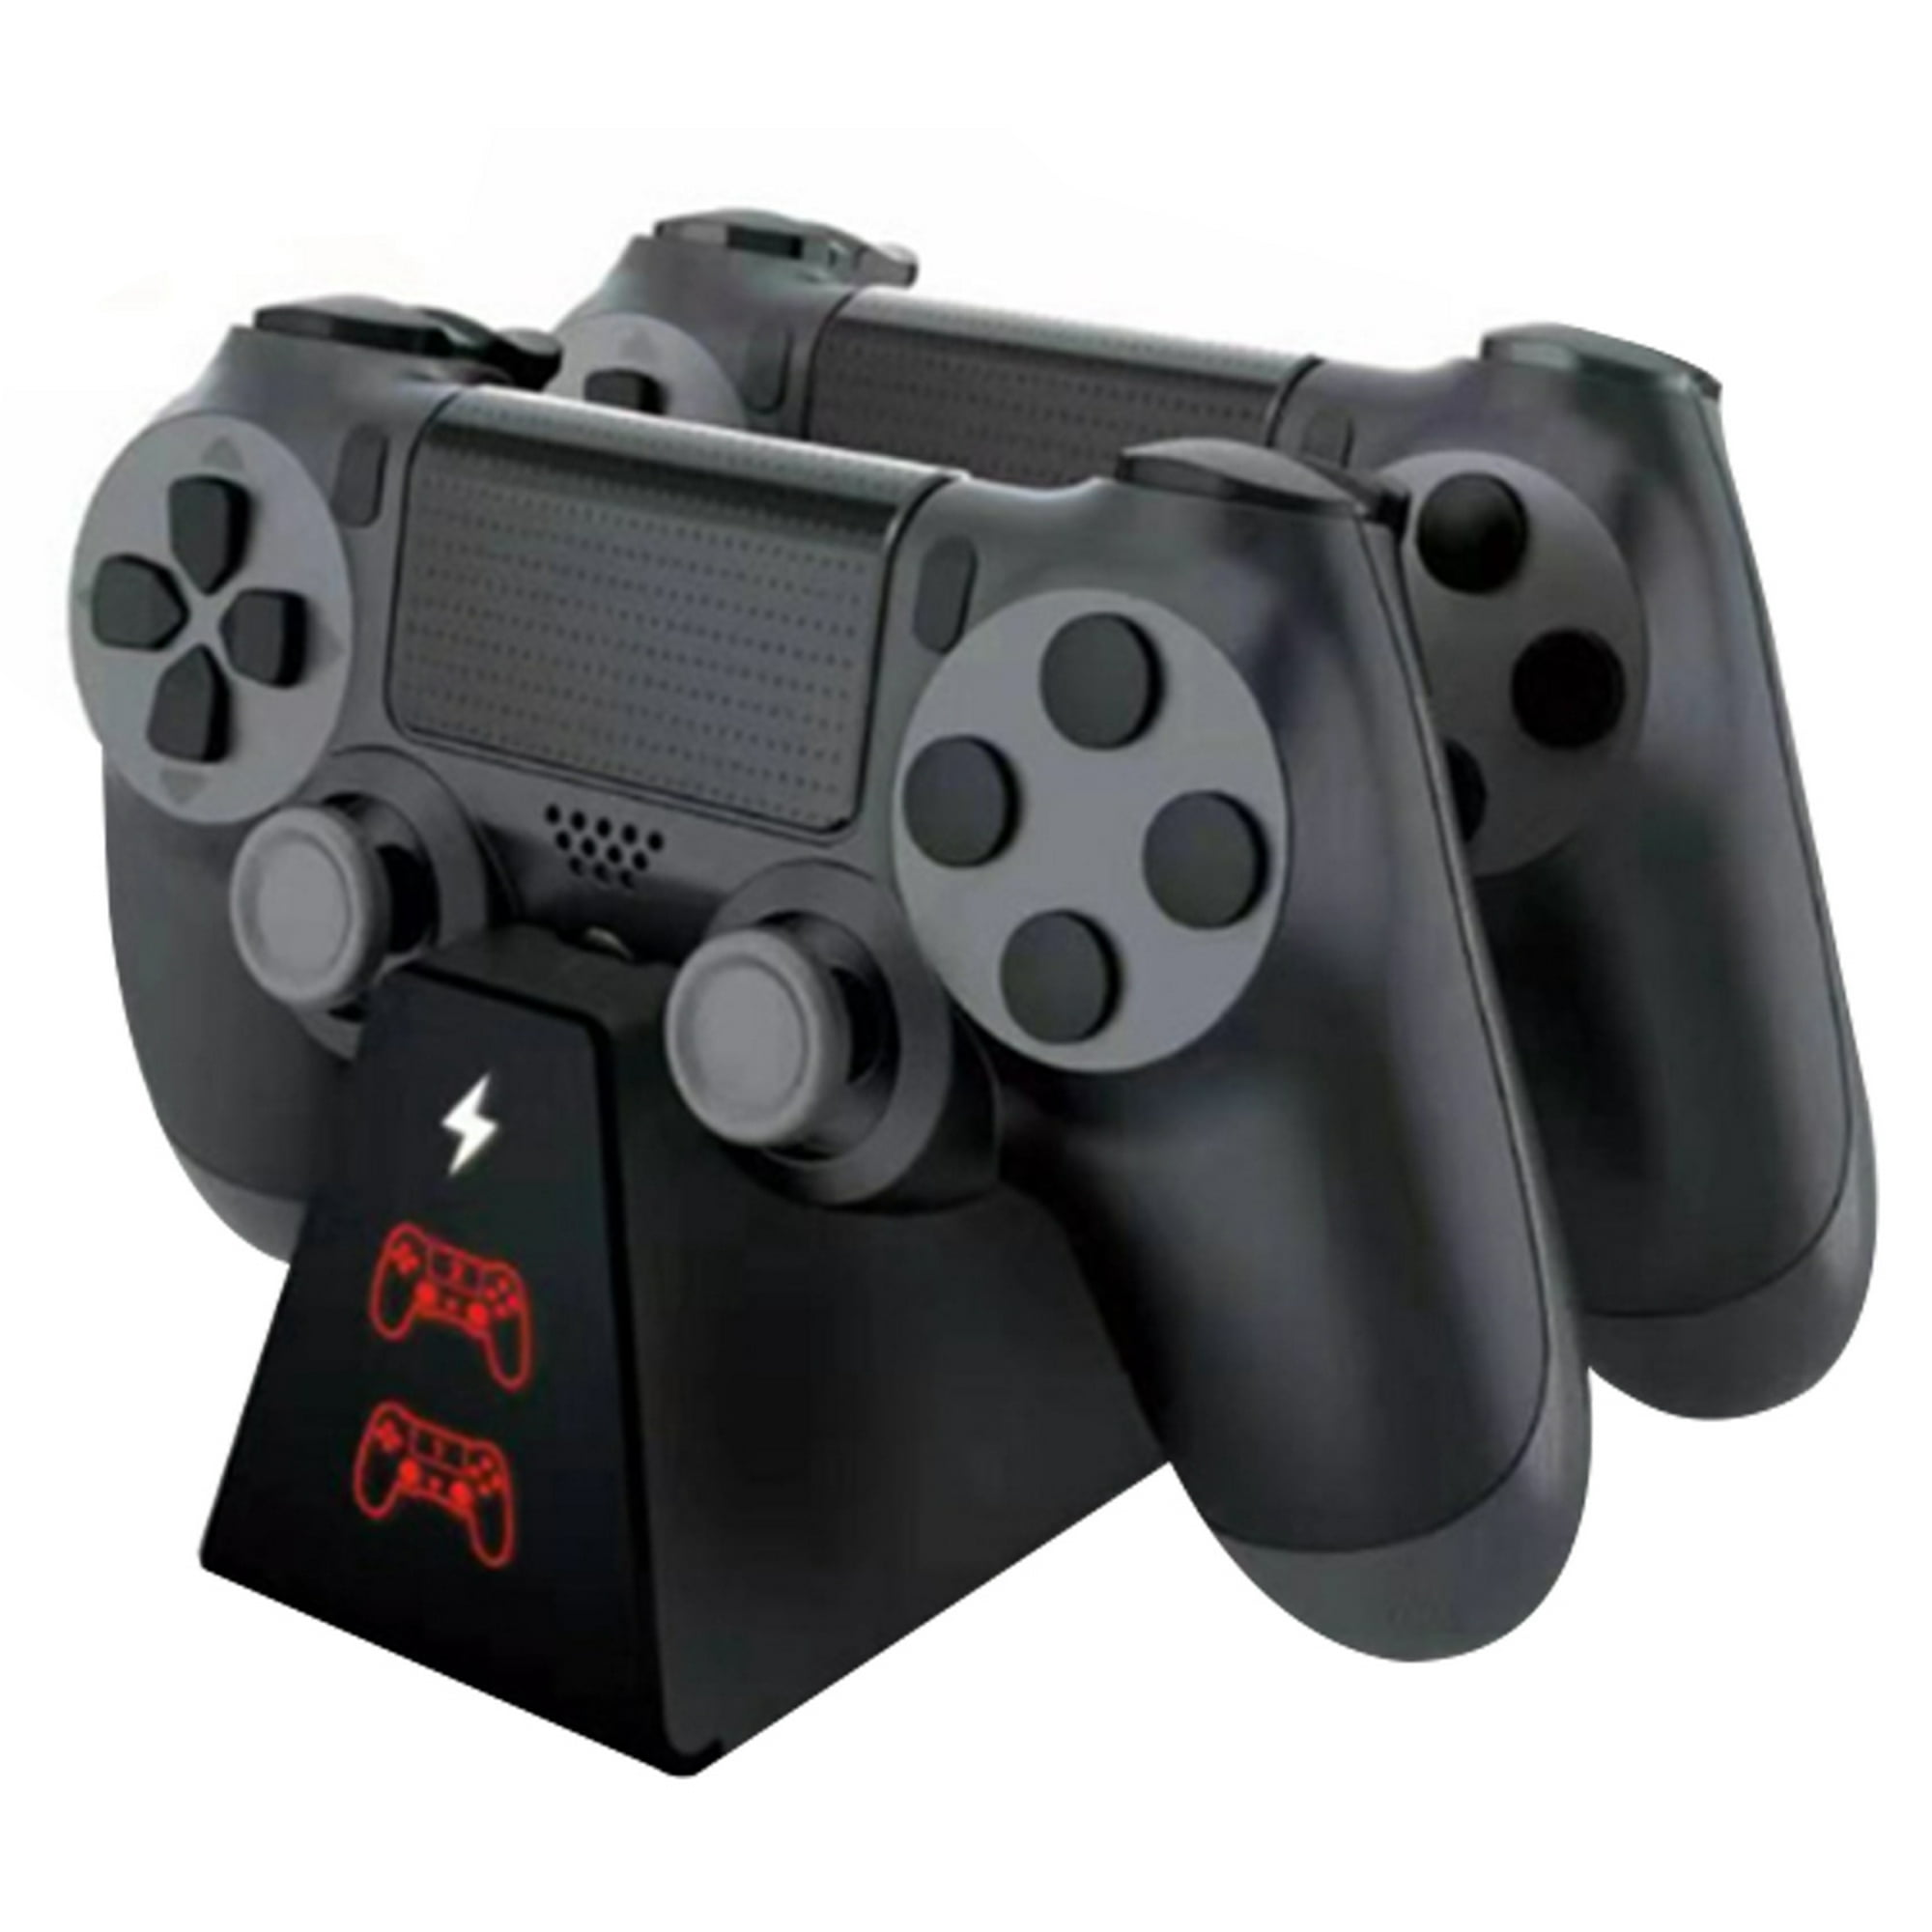 Cargador de controlador PS4, cargador PS4, estación de carga USB compatible  con Dualshock 4, puerto de carga rápida mejorado para controladores  Playstation 4 : Videojuegos 